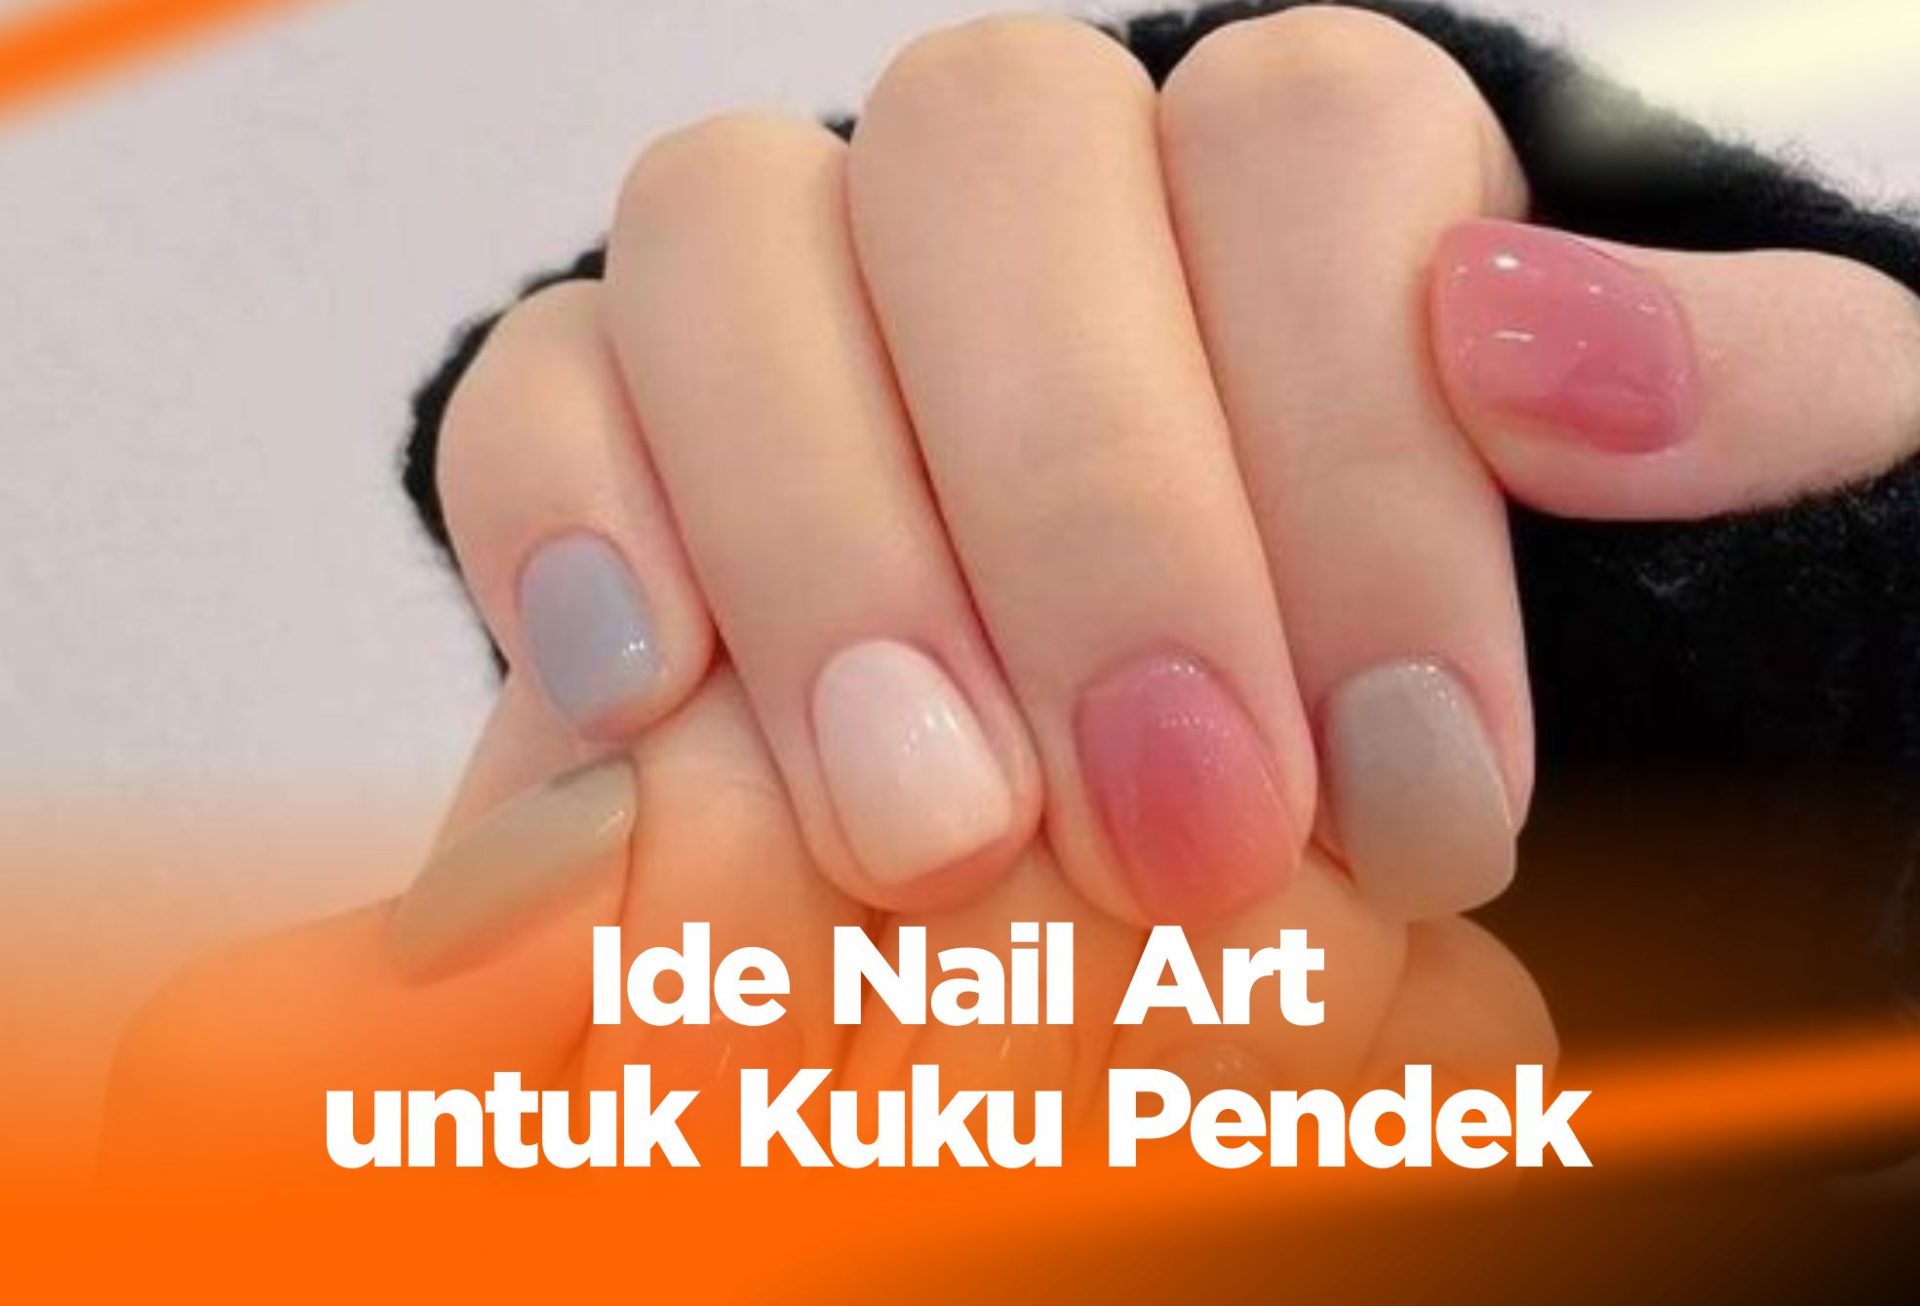 10 Ide Nail Art Kuku Pendek, Simple dan Elagant!